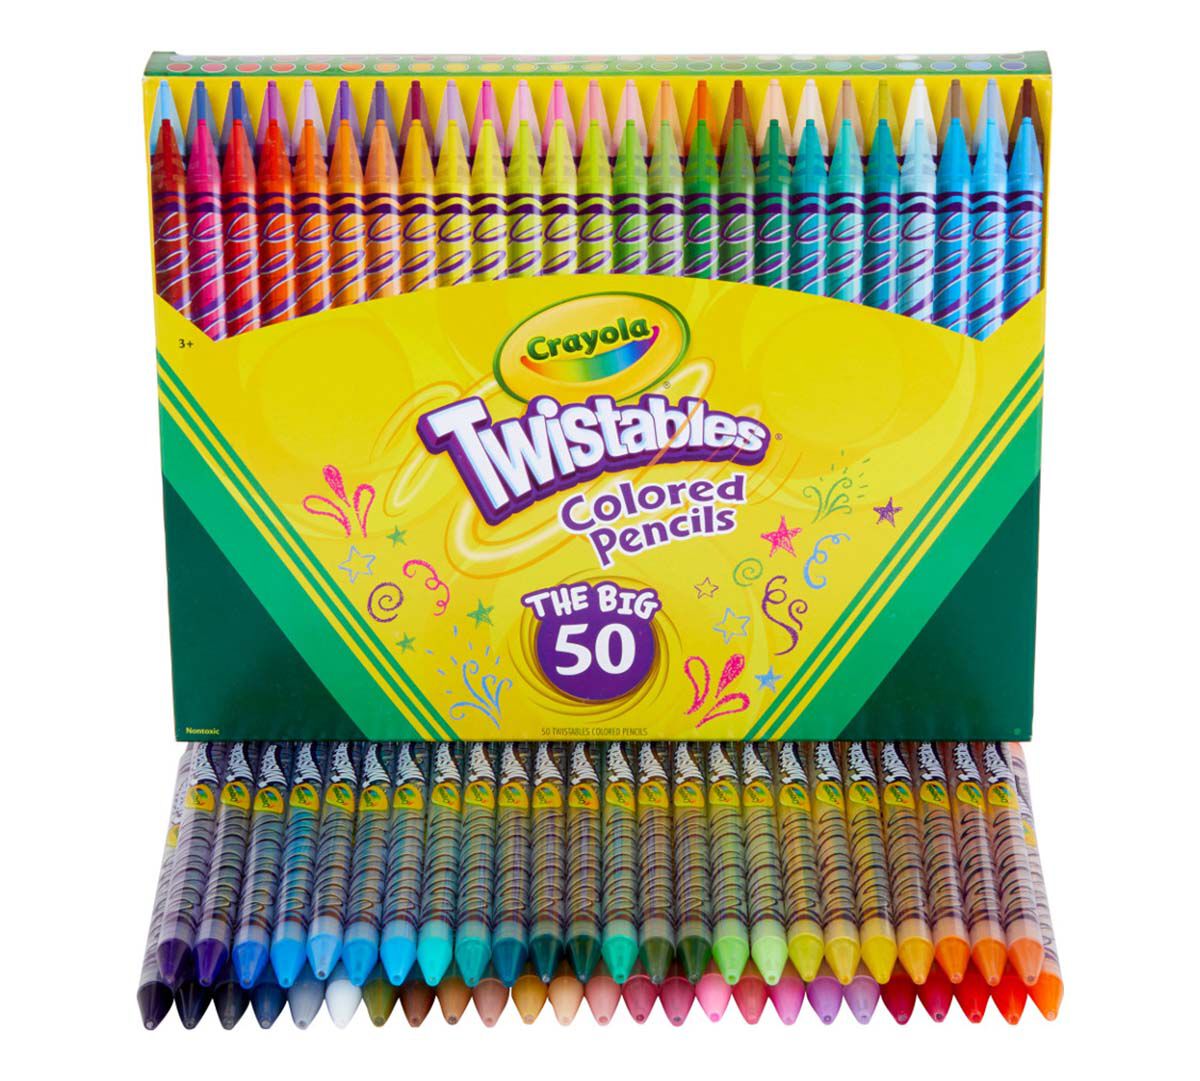 Twistables Colored Pencils Set, 50 Count, Crayola.com